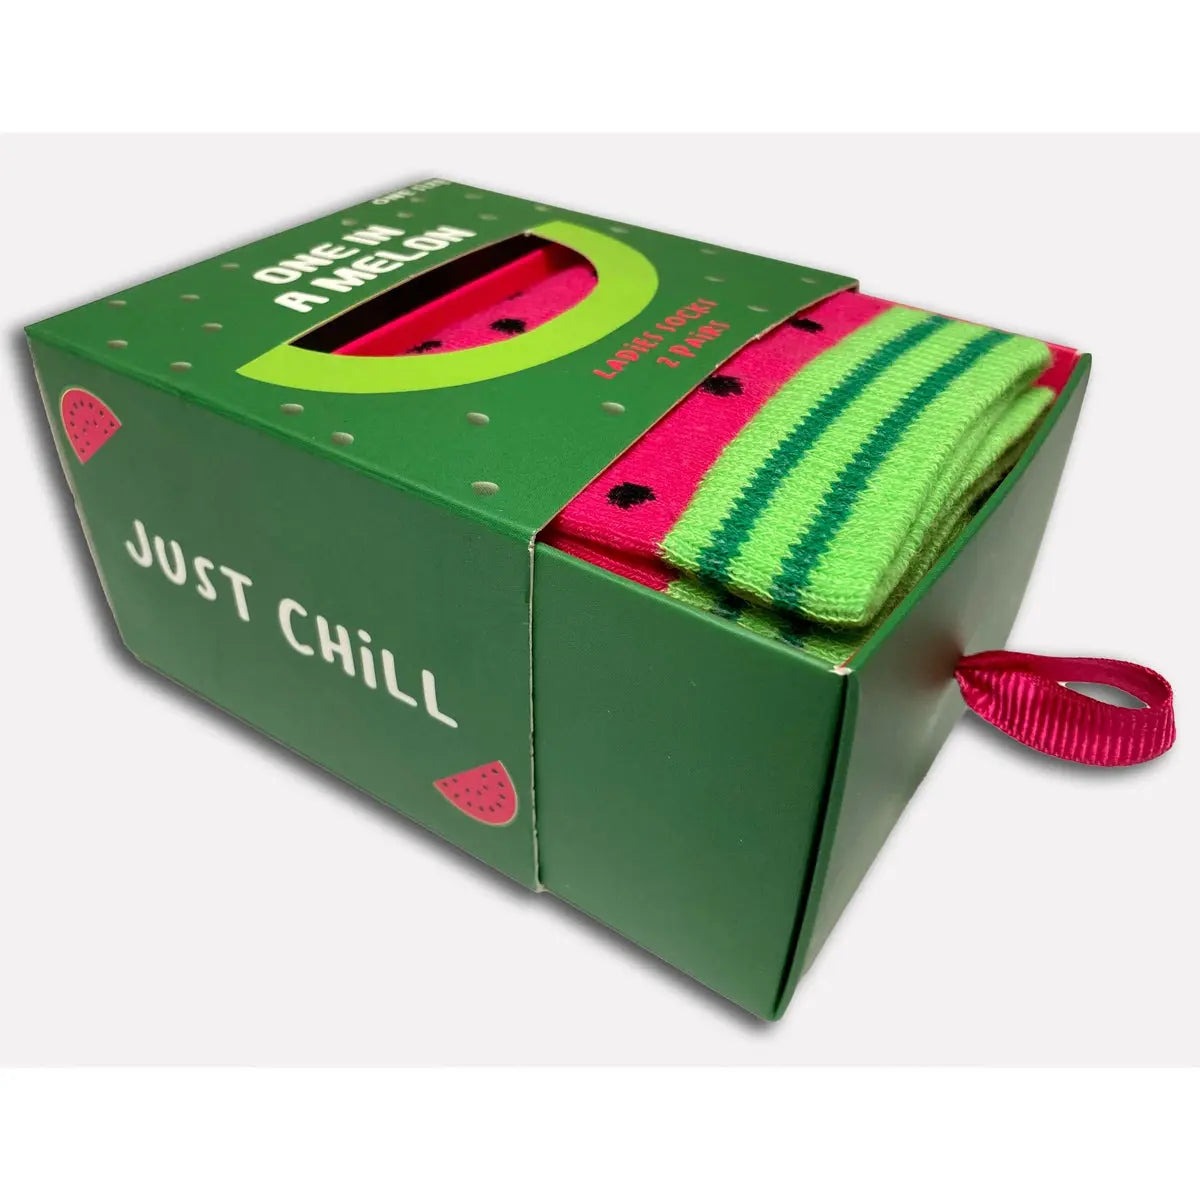 Boxt Socks - Socken mit Melonen Motiv - 2 Paar